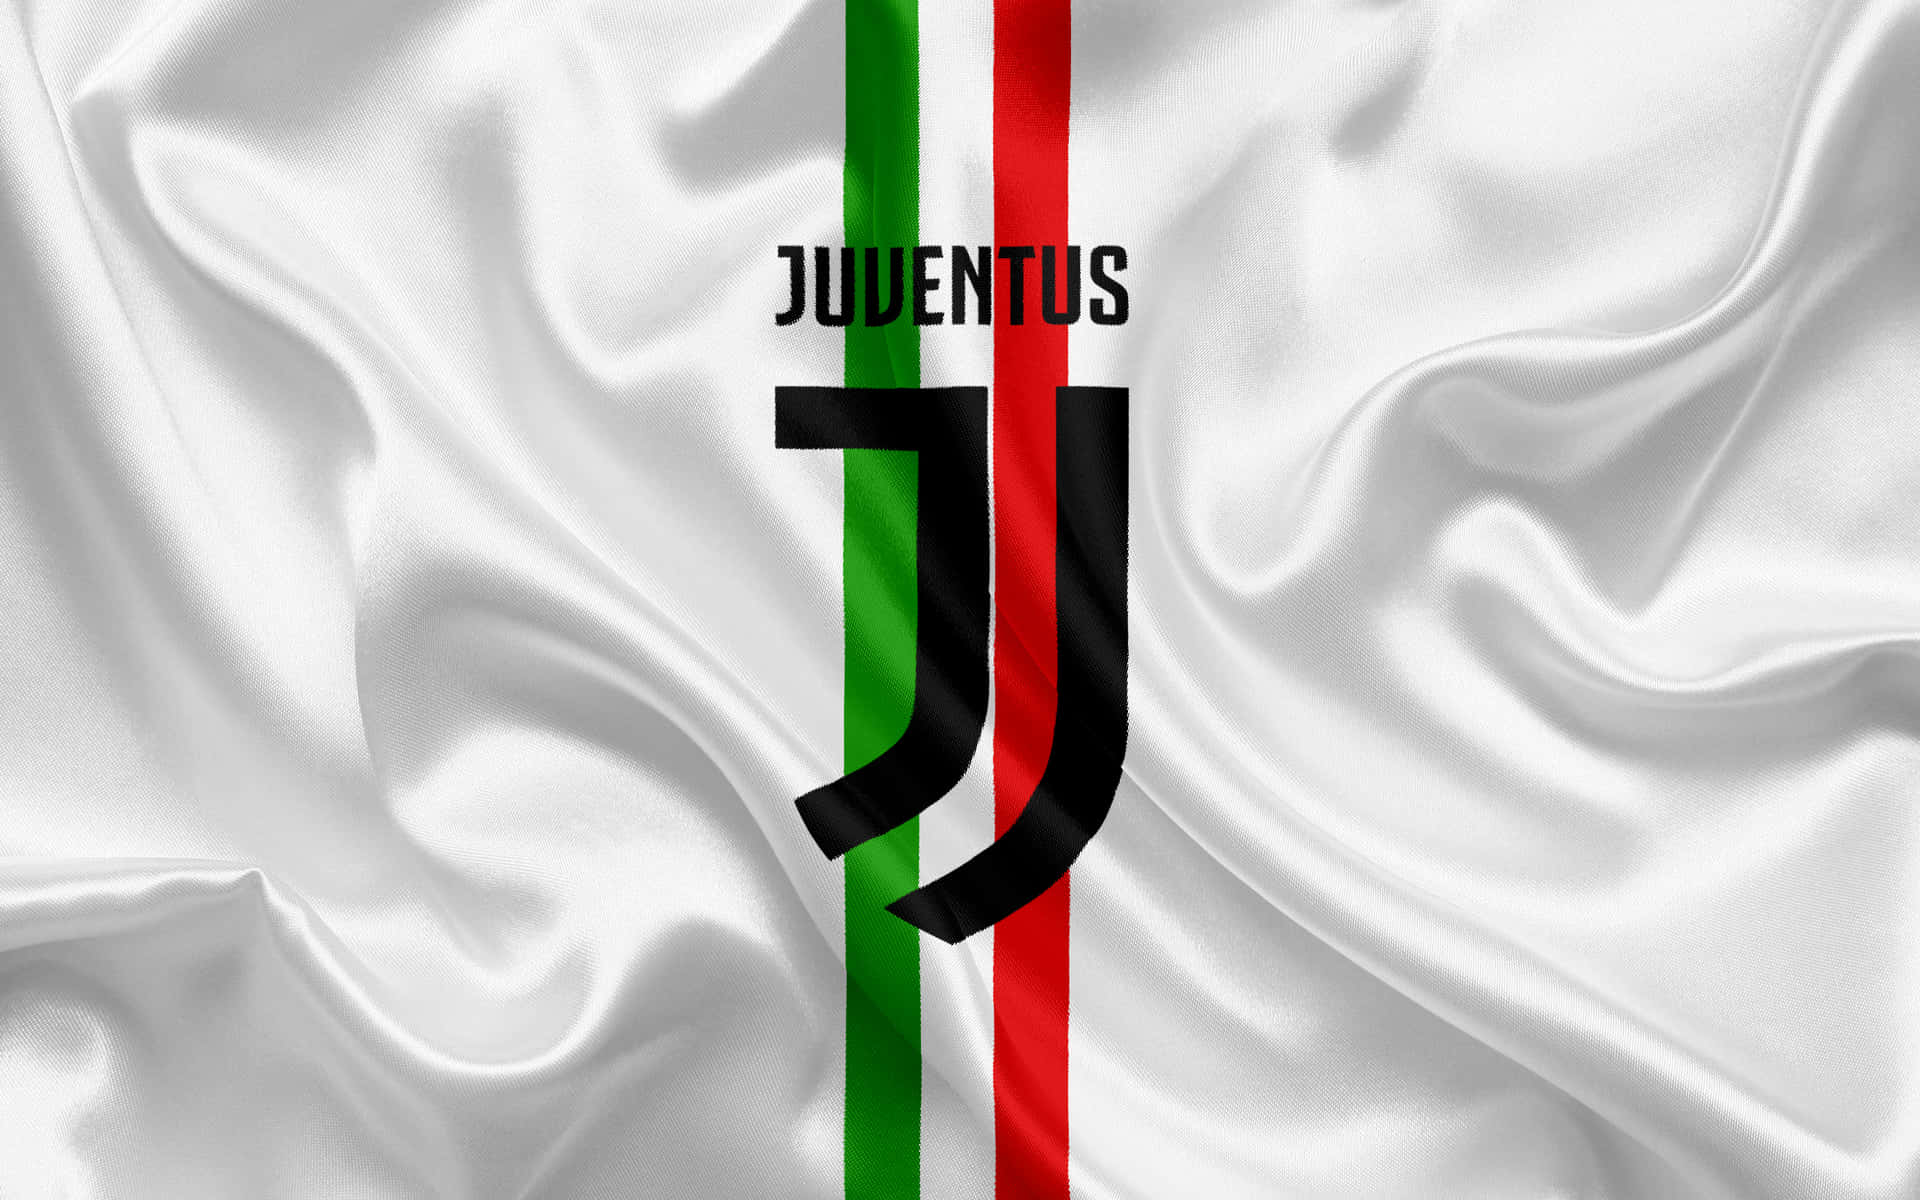 Tuttigli Occhi Sulla Vittoria - La Juventus Festeggia Dopo Aver Vinto Una Partita